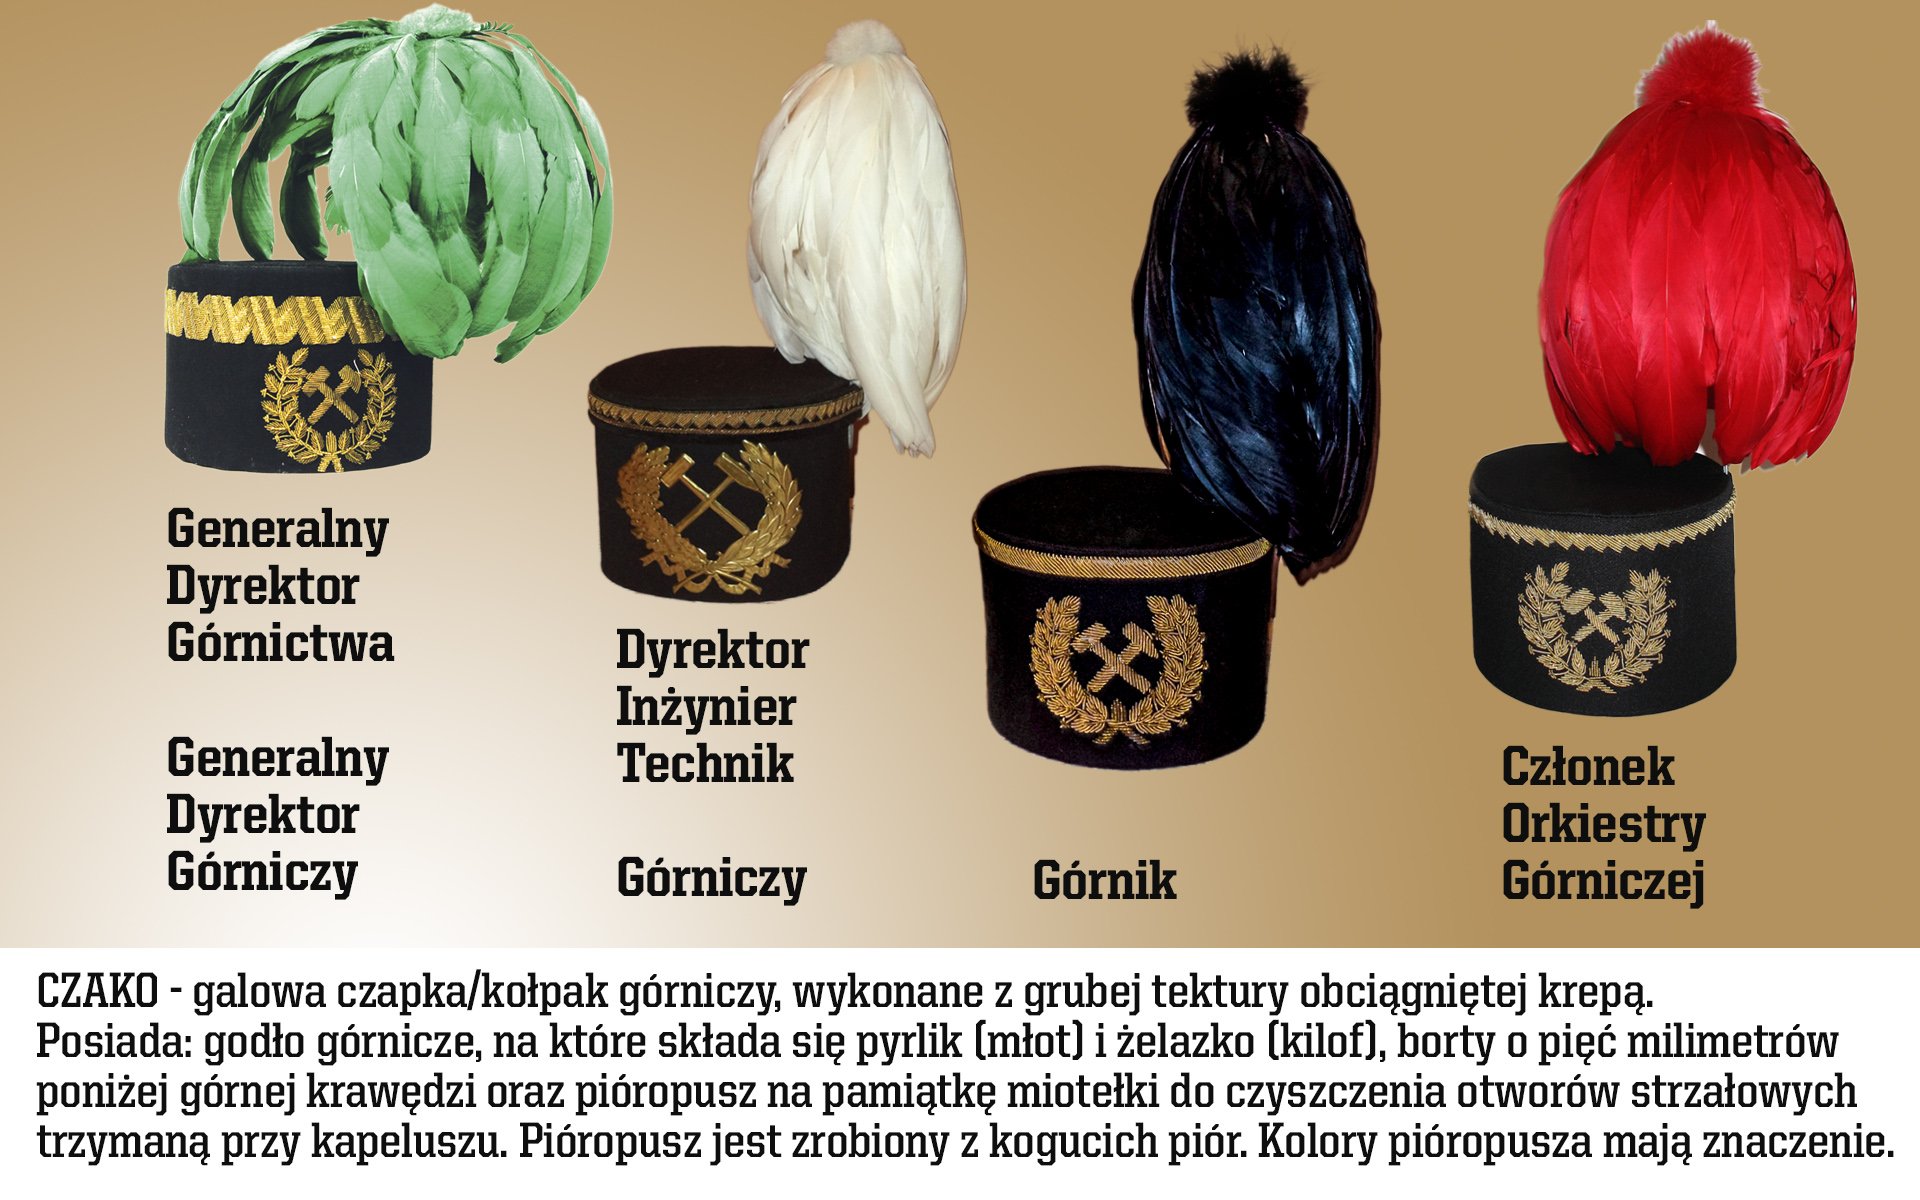 KGHM Polska Miedź on Twitter: "Galowa czapka górnicza, tzw. #czako.  Dlaczego ma różne kolory pióropusza i co one oznaczają? #KGHM #Barbórka  #DzieńGórnika https://t.co/ELkdpsJQ14" / Twitter